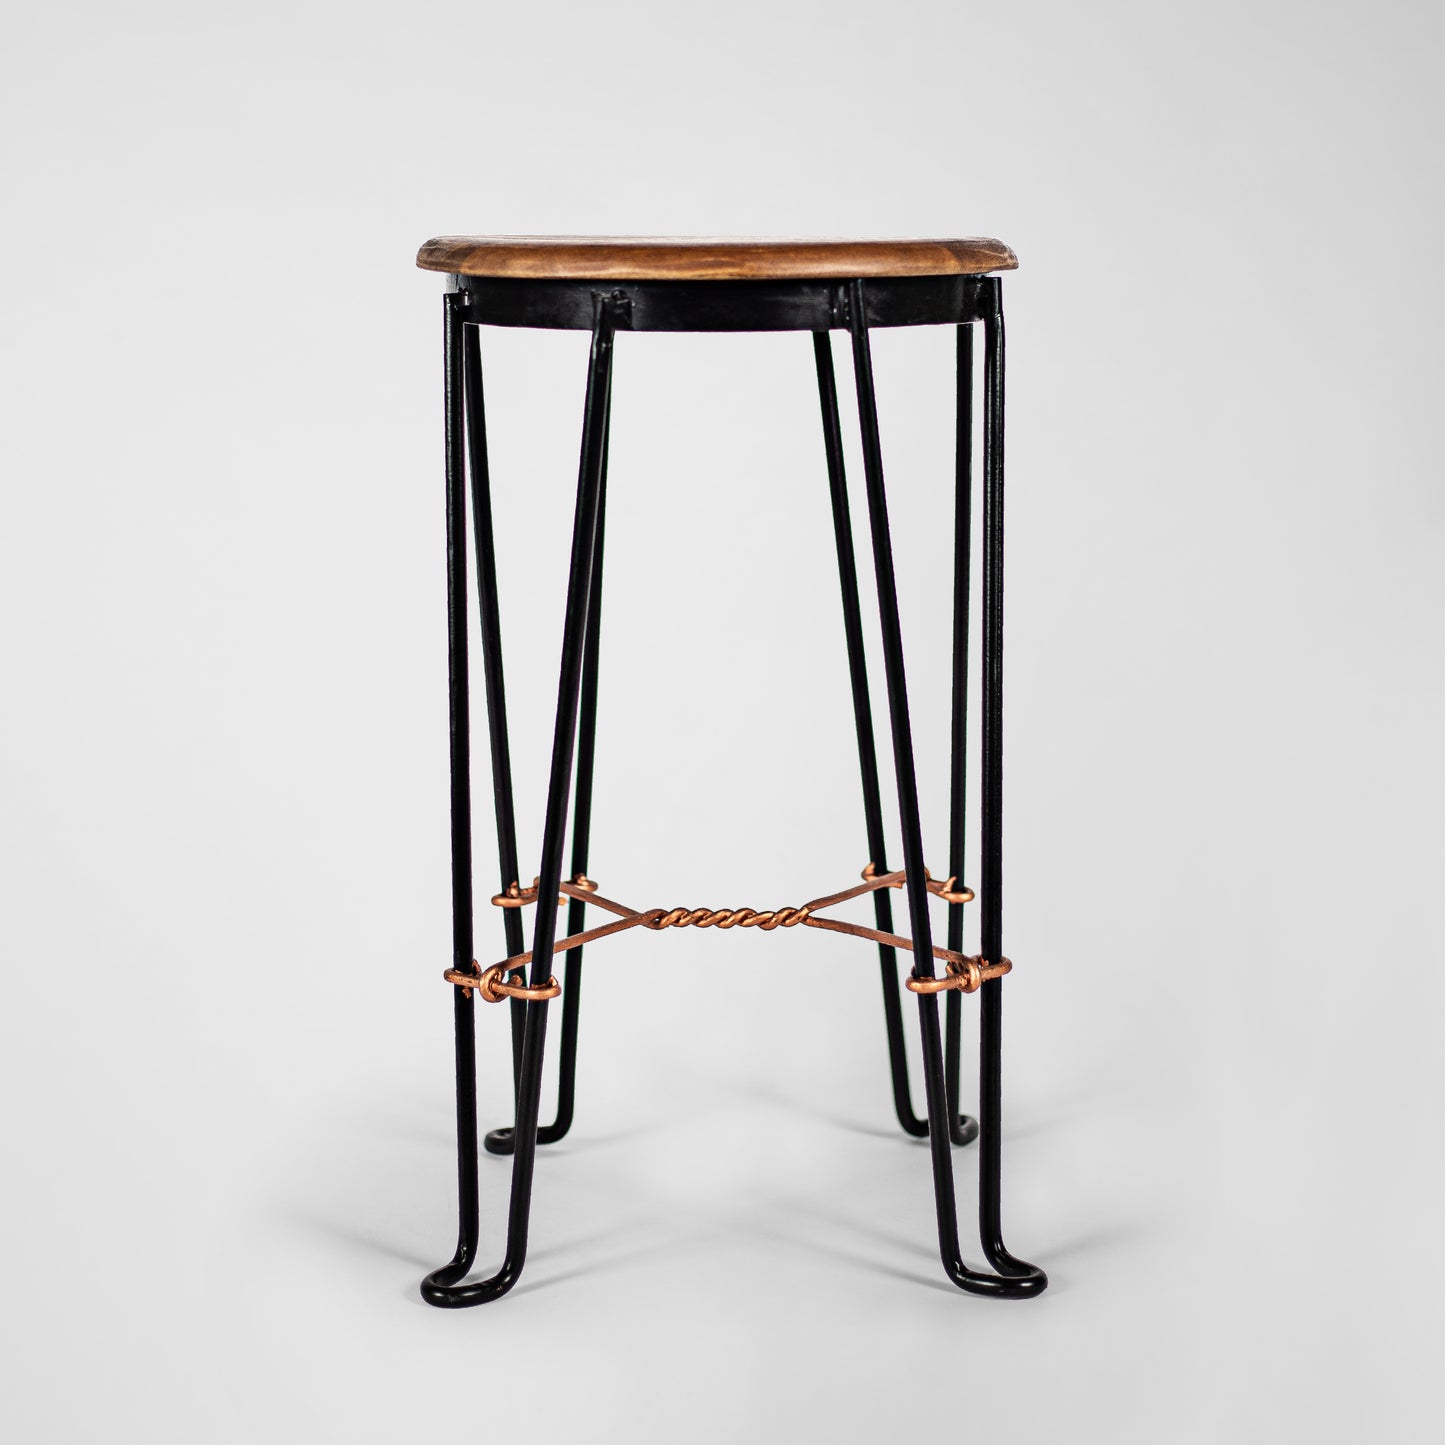 Tony Twister – Handmade Industrie-Design Hocker aus Metall mit Holzsitz in schwarz und Kupfer